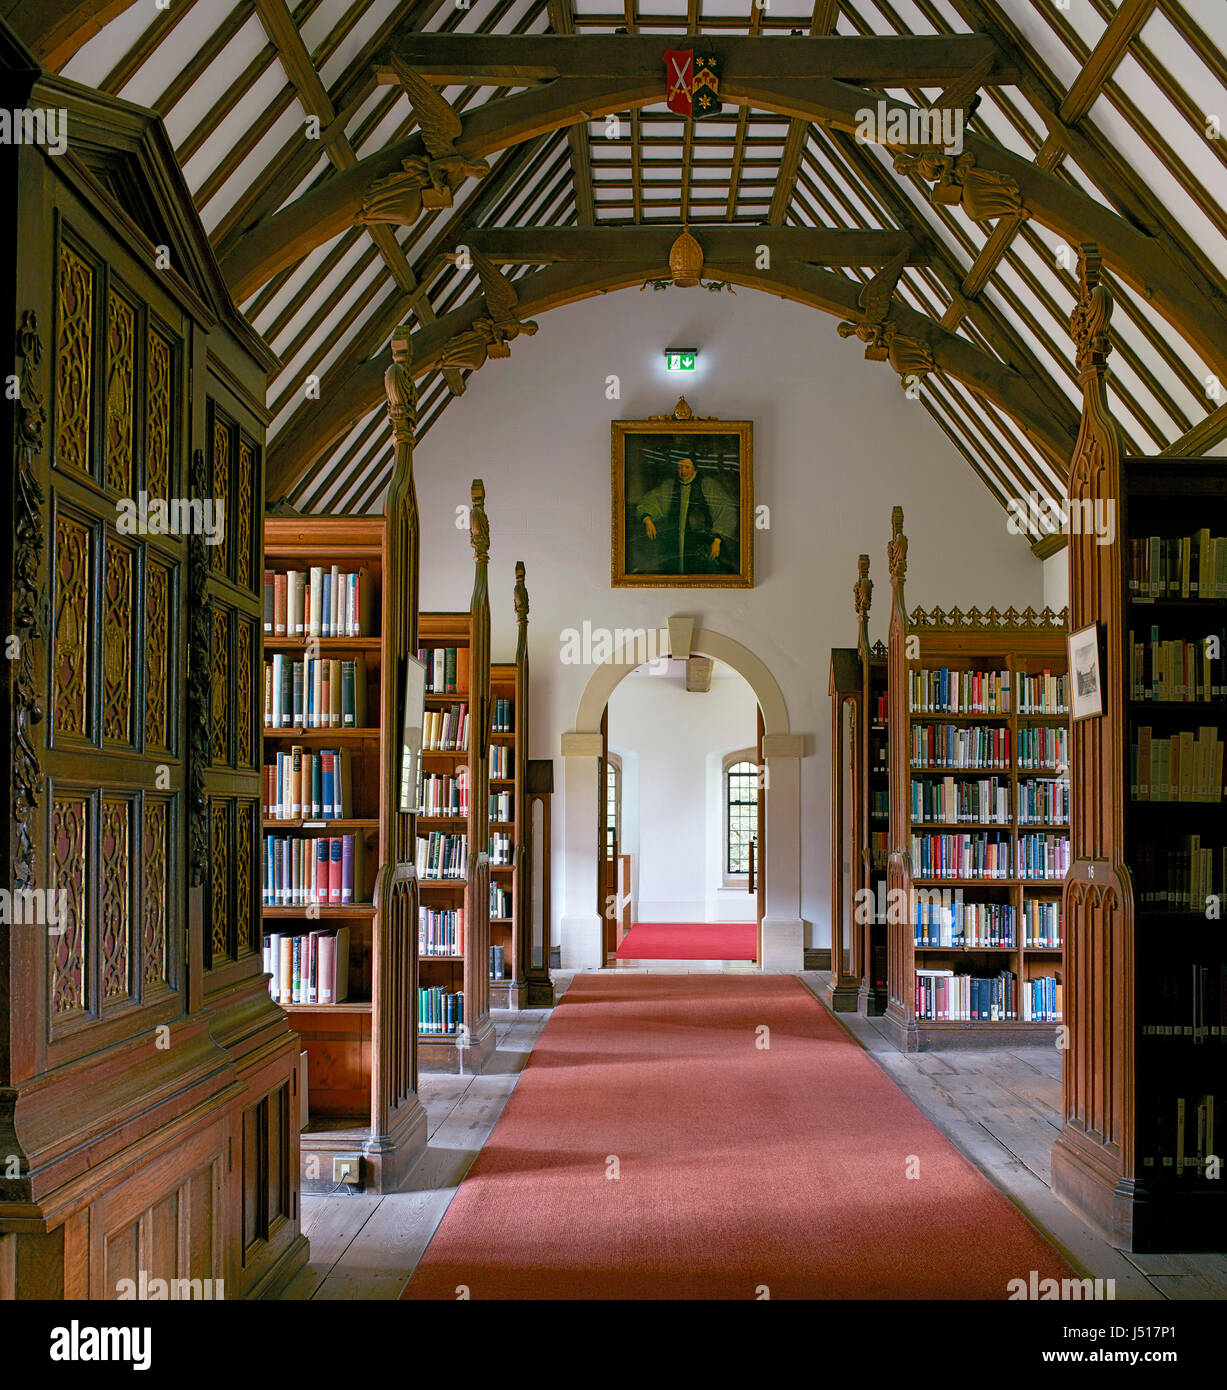 Vista nella storica Libreria Laudian. St John's College, Oxford, Oxford,  Regno Unito. Architetto: Wright & Wright Architects LLP, 2015 Foto stock -  Alamy